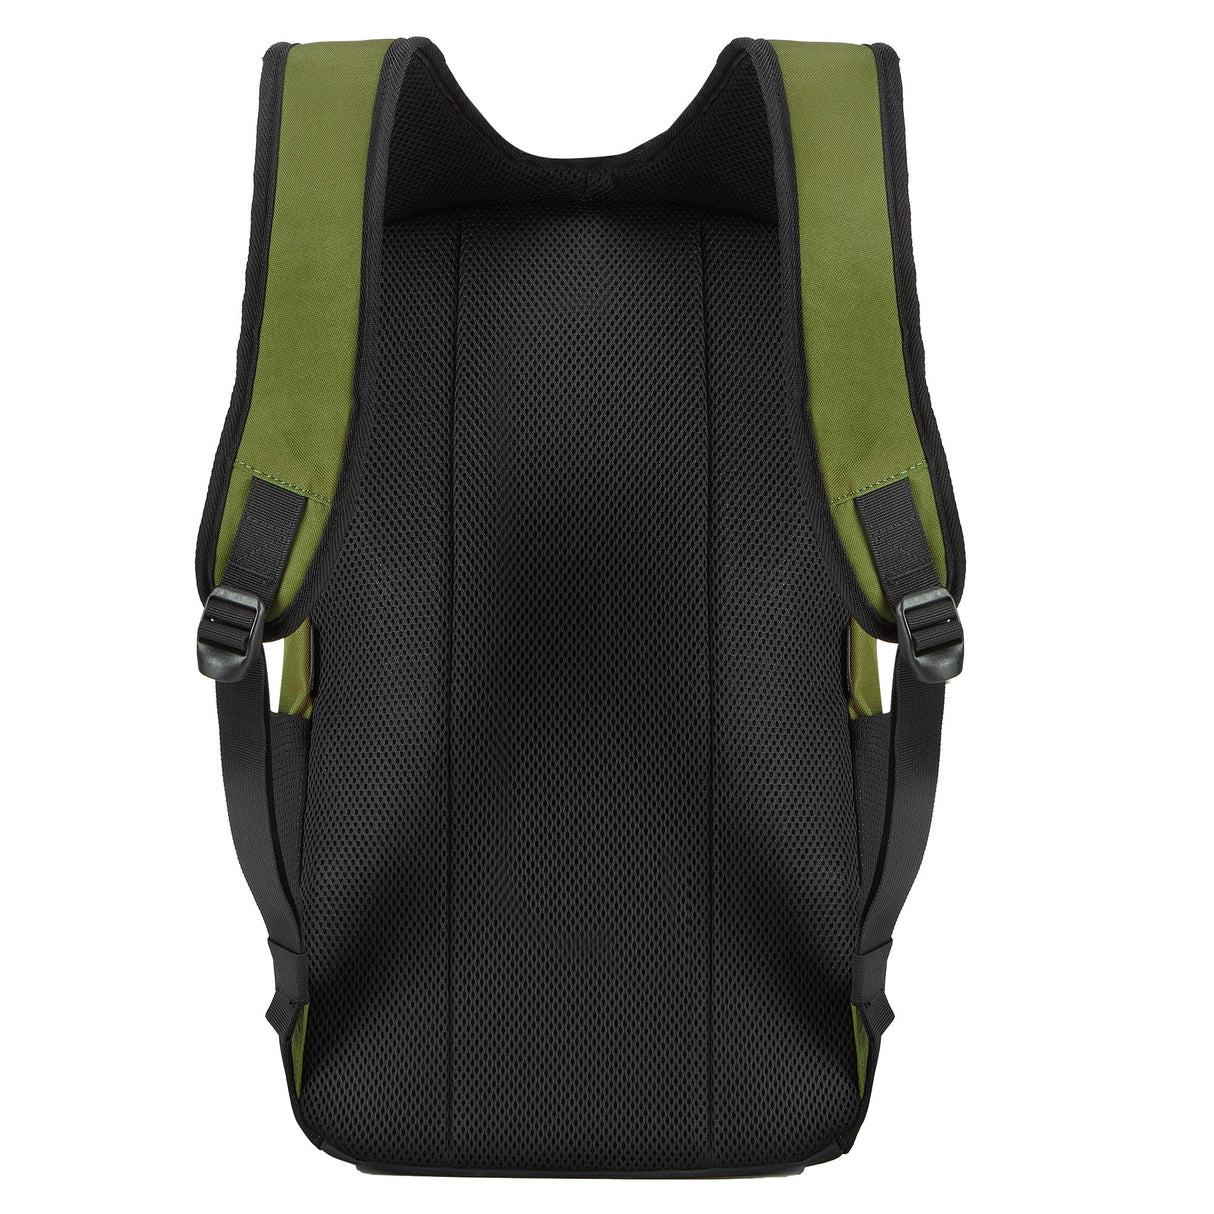 Alpinestars Gfx V2 Backpack - Military Green